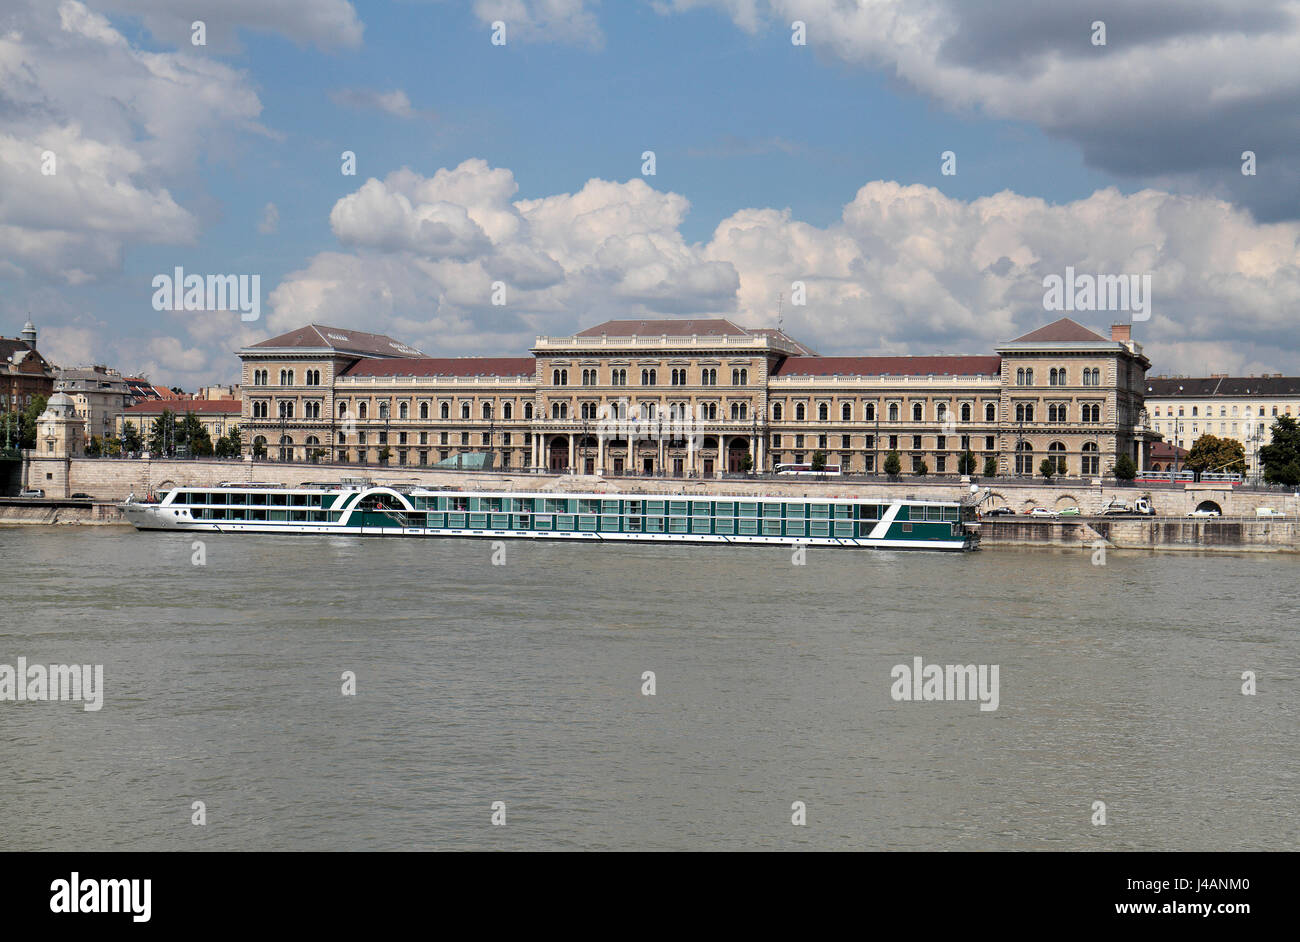 Blick über die Donau, die große Markthalle (oder zentralen Markthalle oder "Nagyvasarcsarnok" in Budapest, Ungarn. Stockfoto